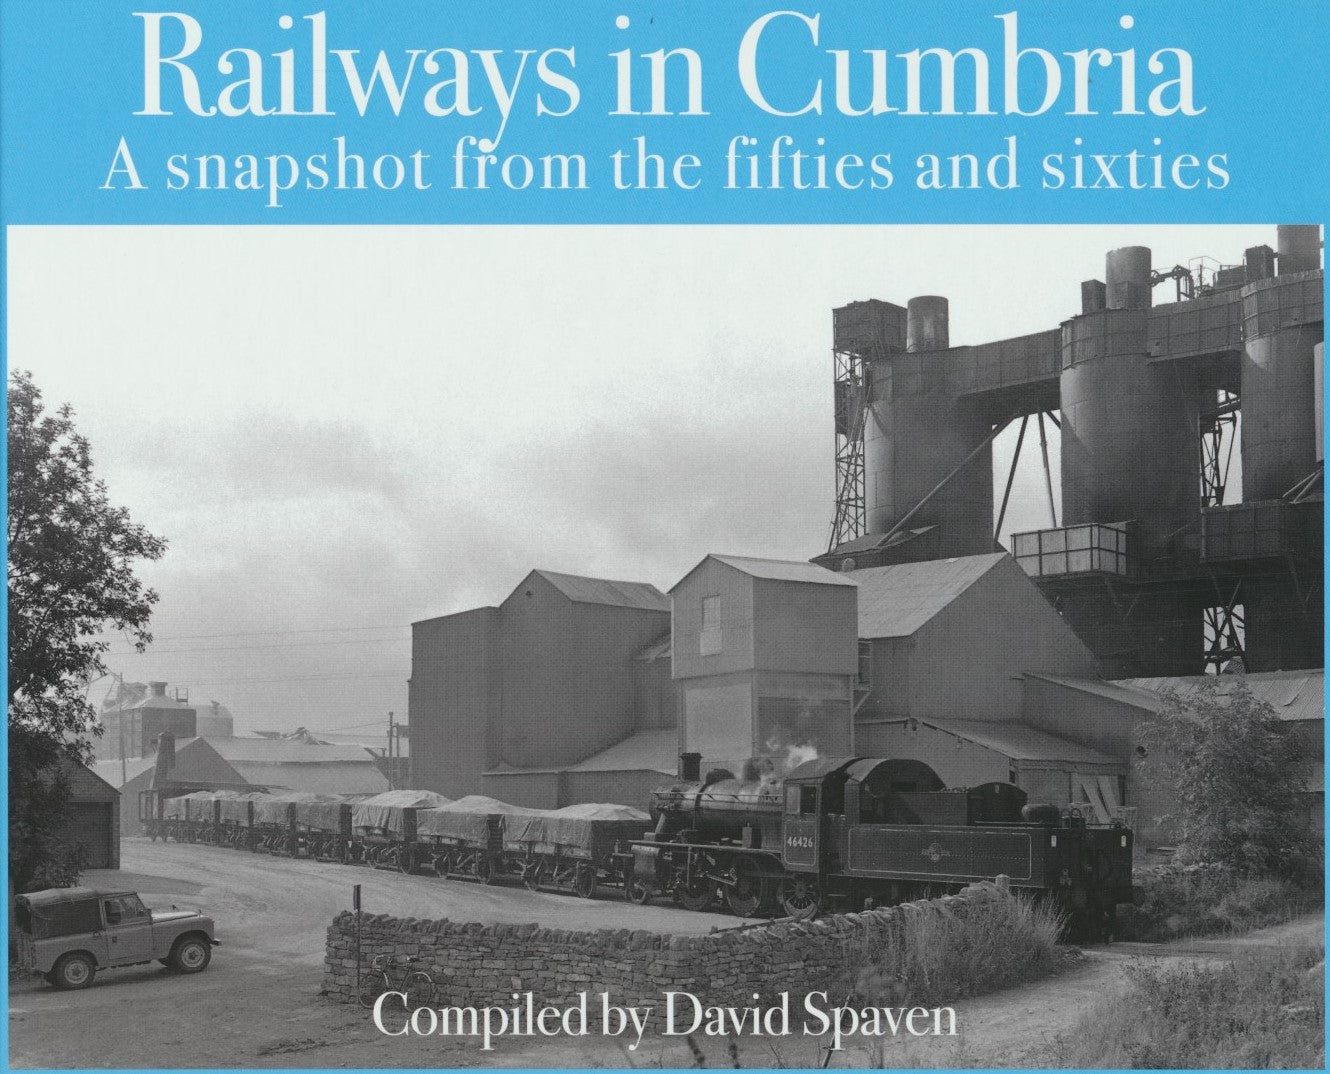 Railways in Cumbria